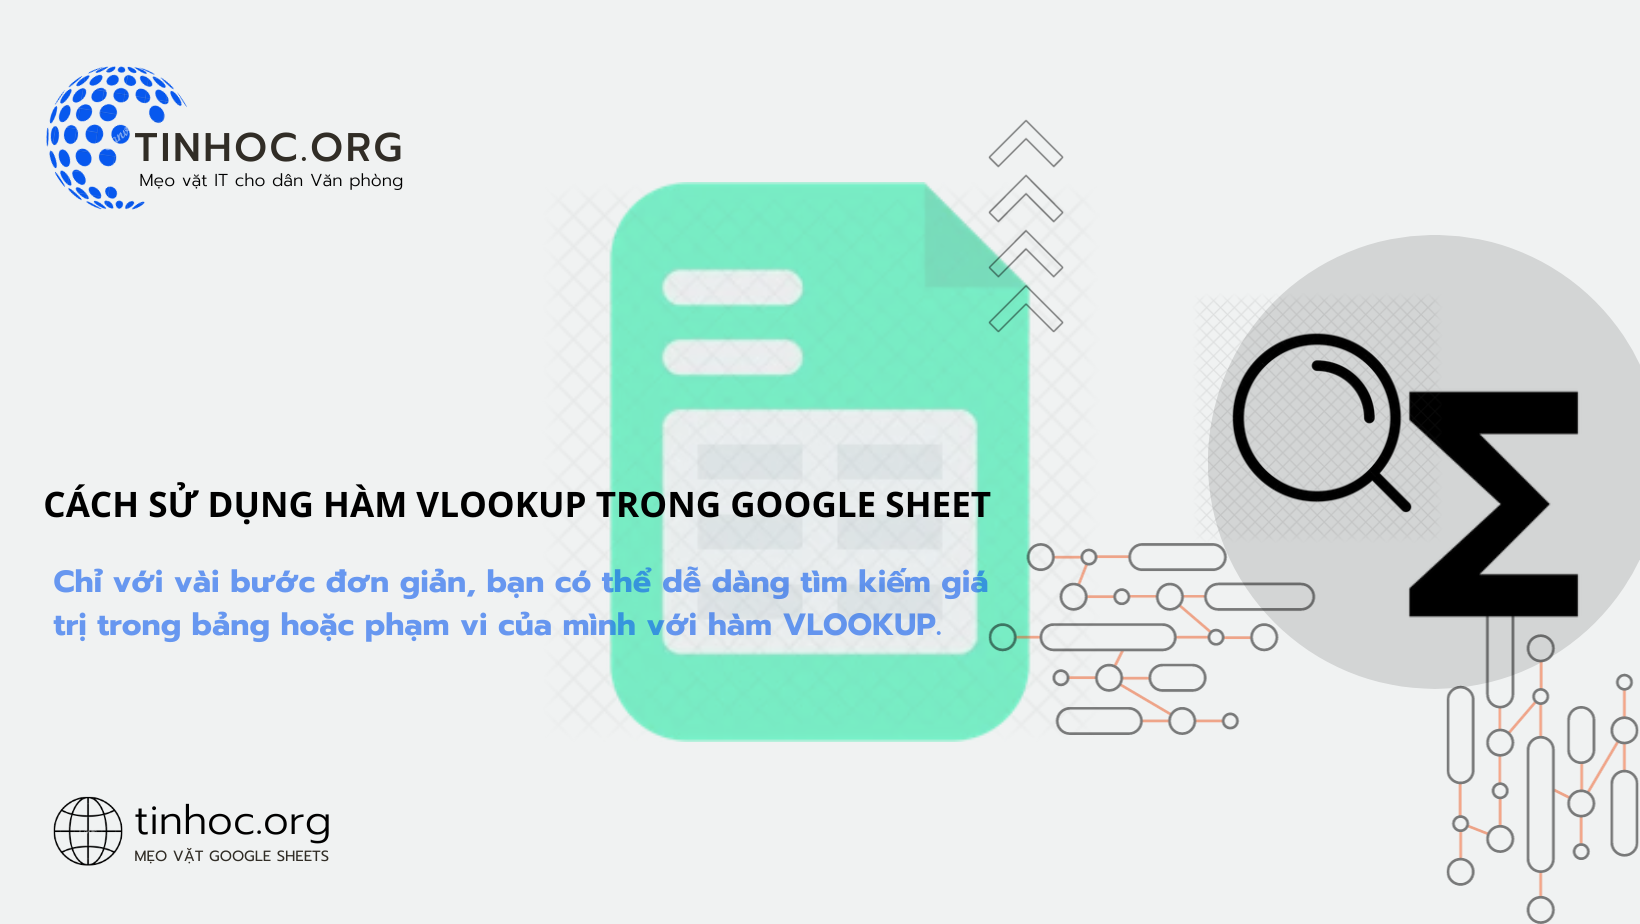 Cách sử dụng hàm VLOOKUP trong Google Sheet